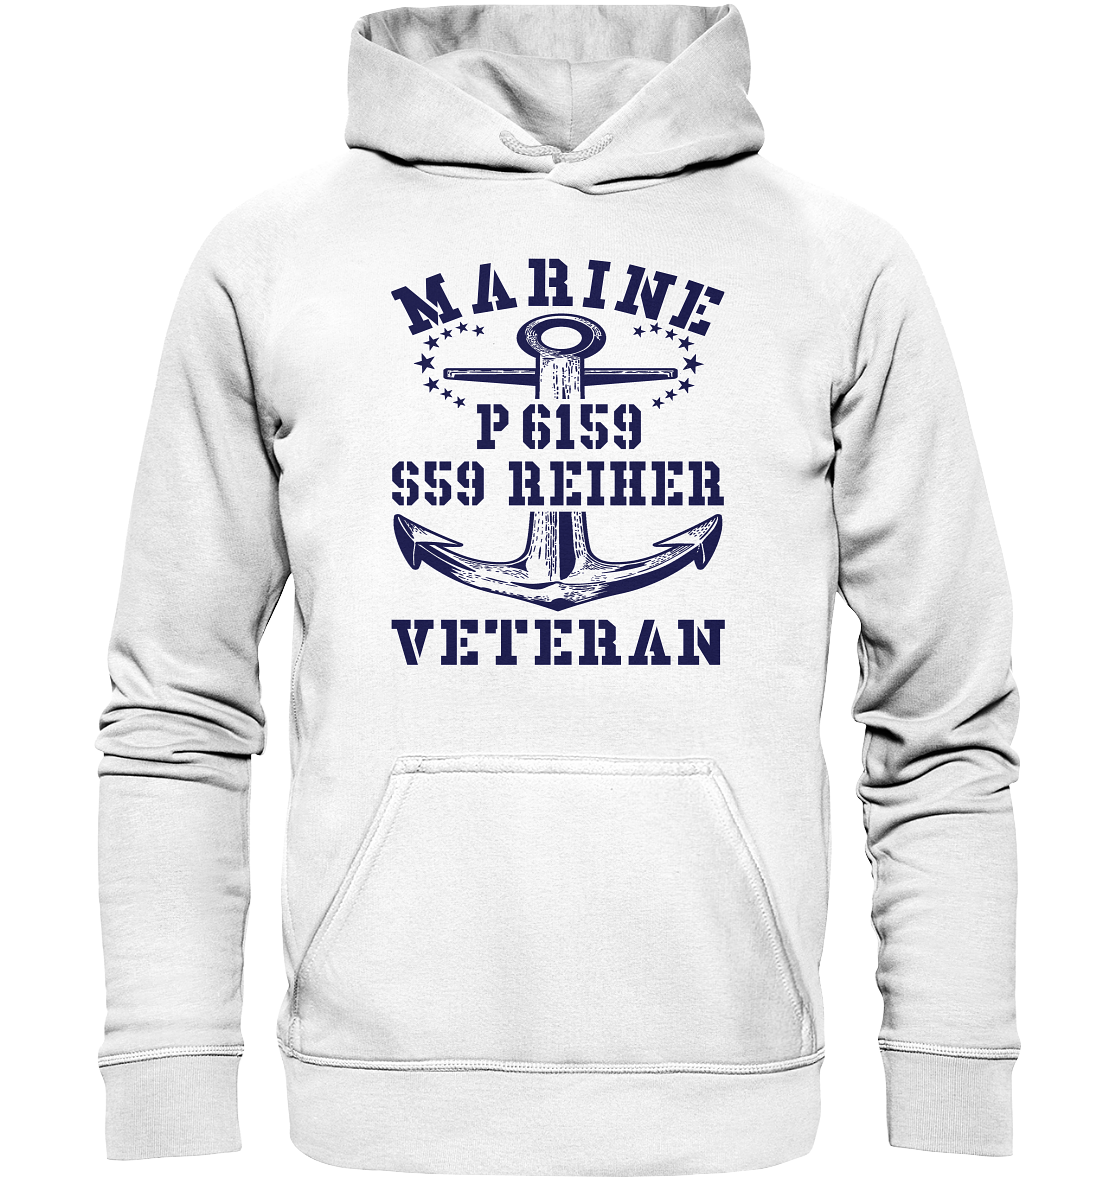 P6159 S59 REIHER Marine Veteran - Basic Unisex Hoodie